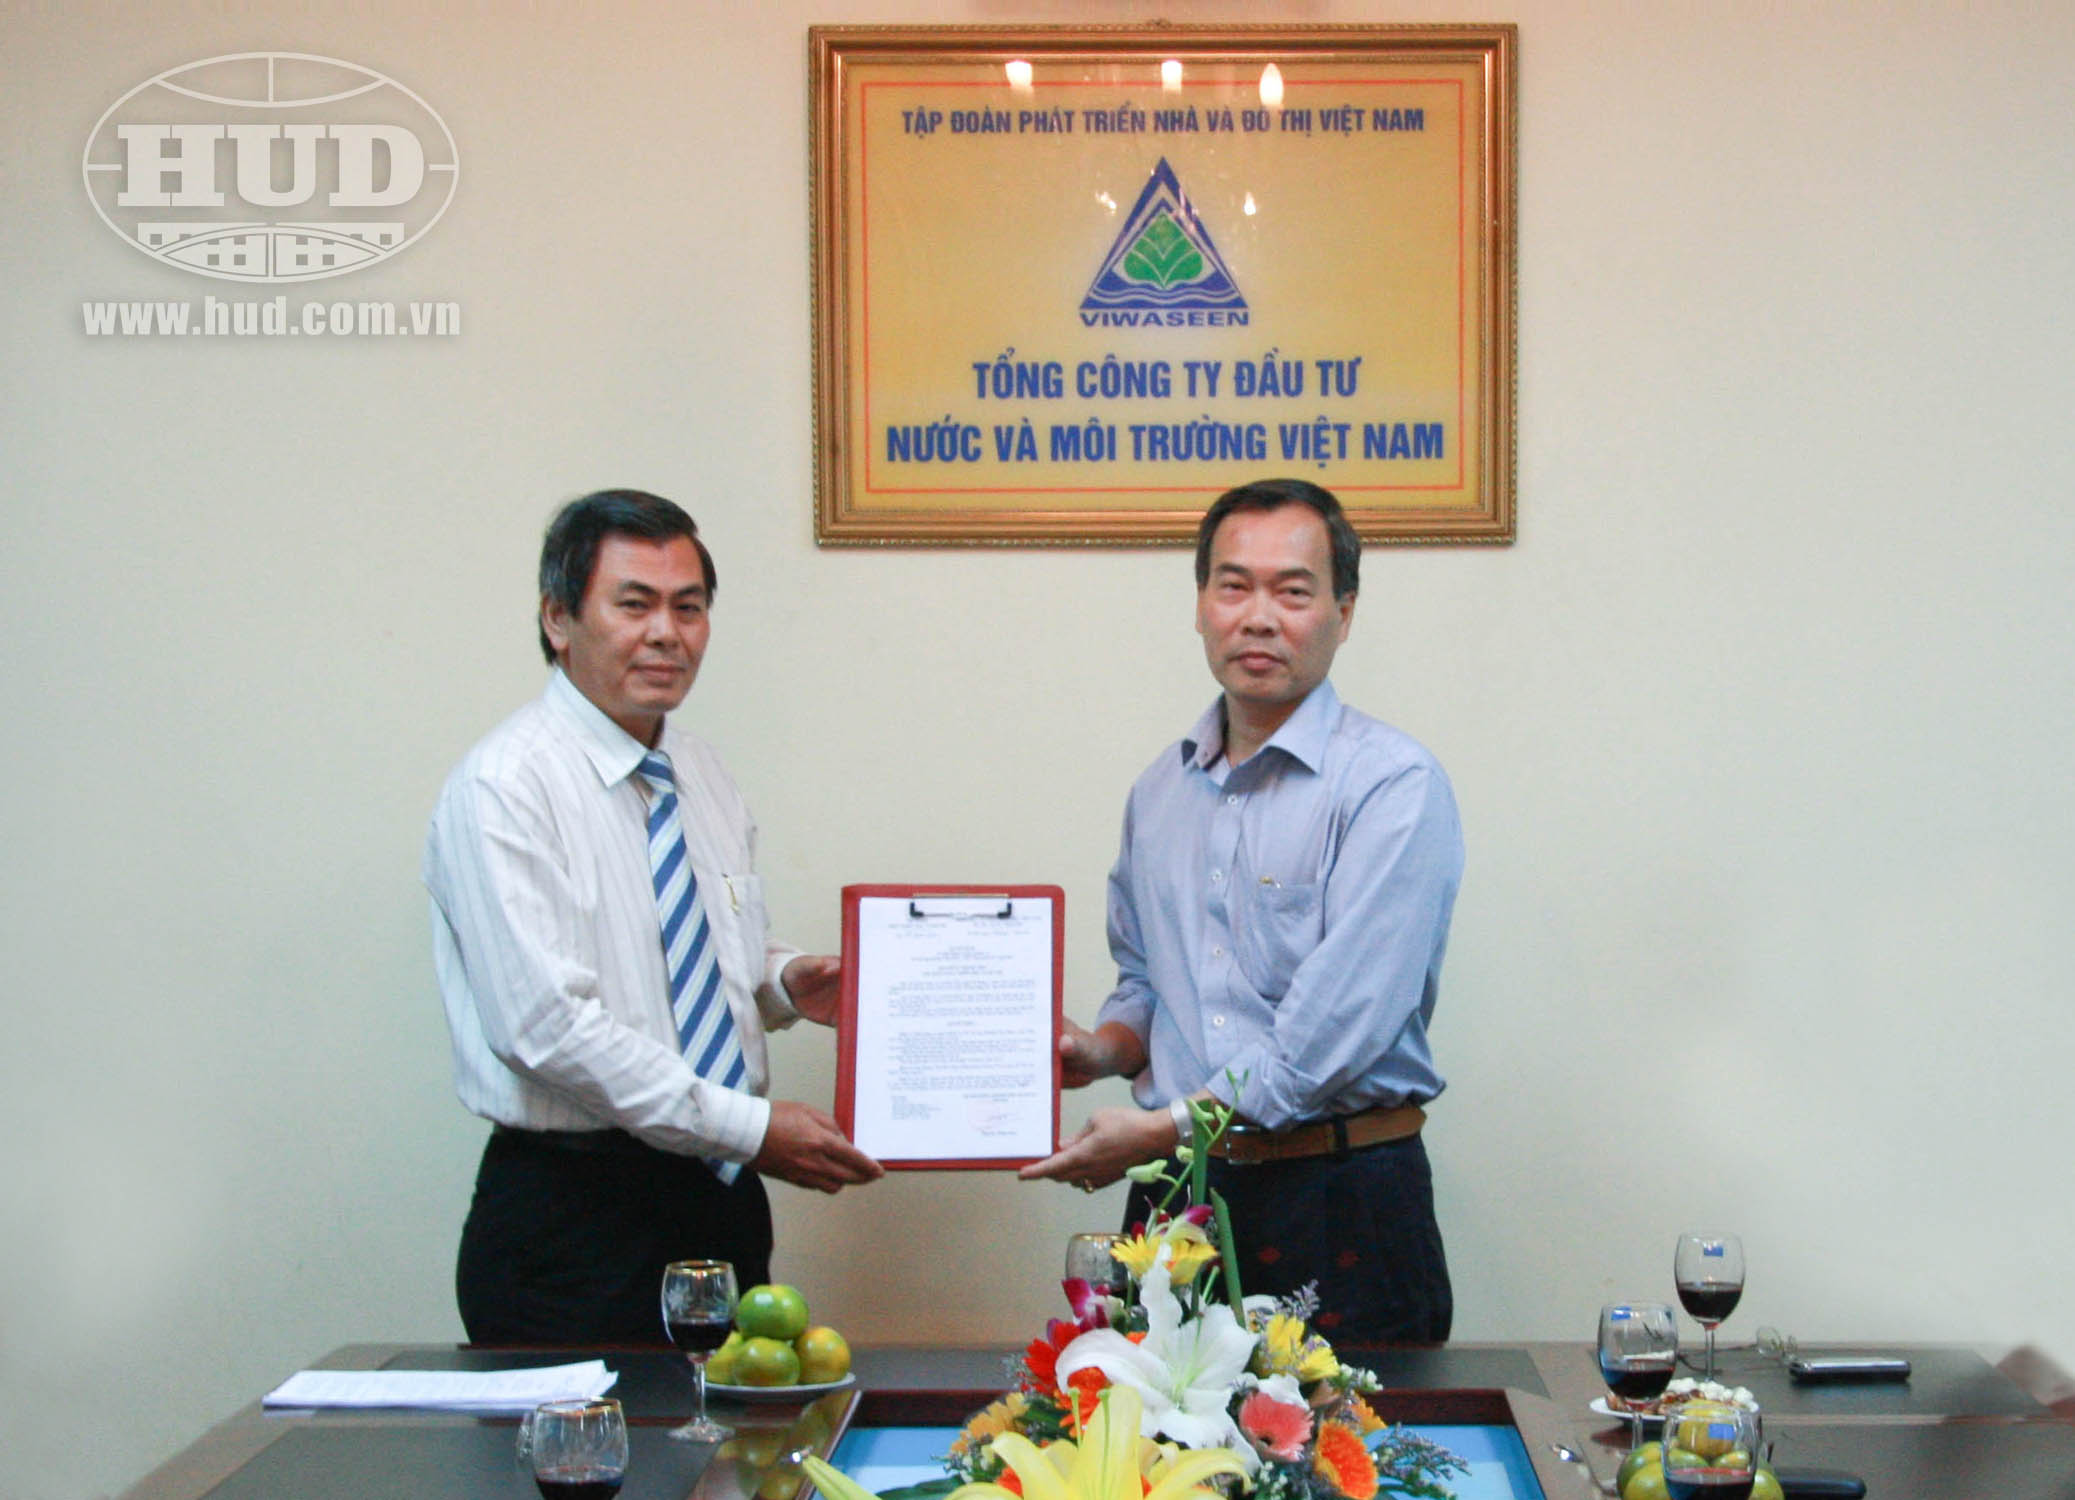 Chủ tịch Tập đoàn Nguyễn Đăng Nam (bên phải) trao Quyết định bổ nhiệm cho ông Dương Văn Phúc